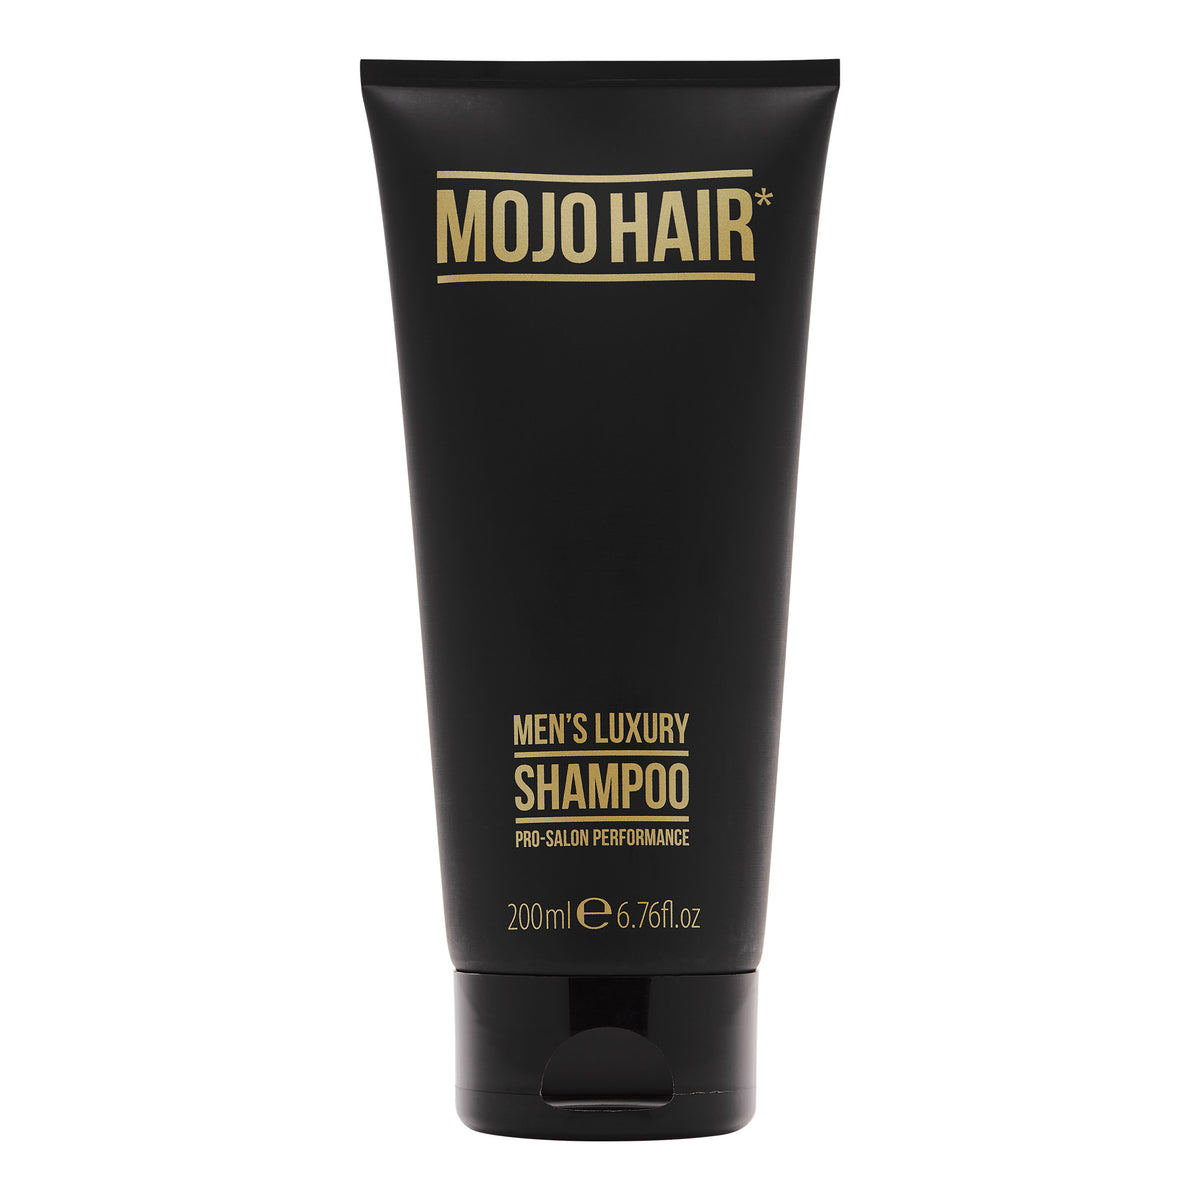 Mojo Hair Men’s Luxury Shampoo (200ml / 6.76fl.oz)